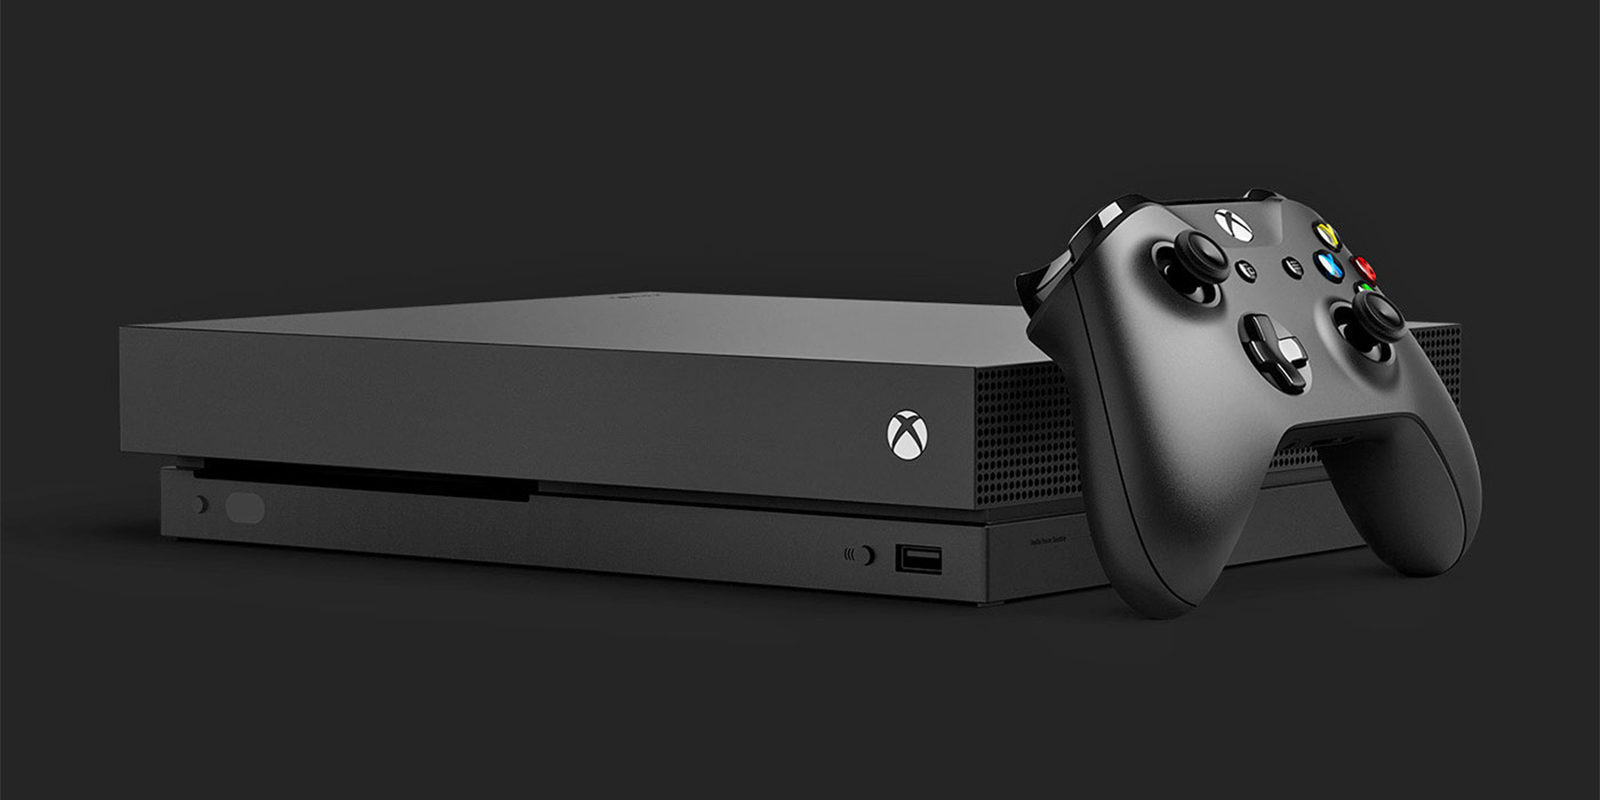 Microsoft asegura que la demanda de Xbox One X es alta y que fabrican unidades tan rápido como pueden